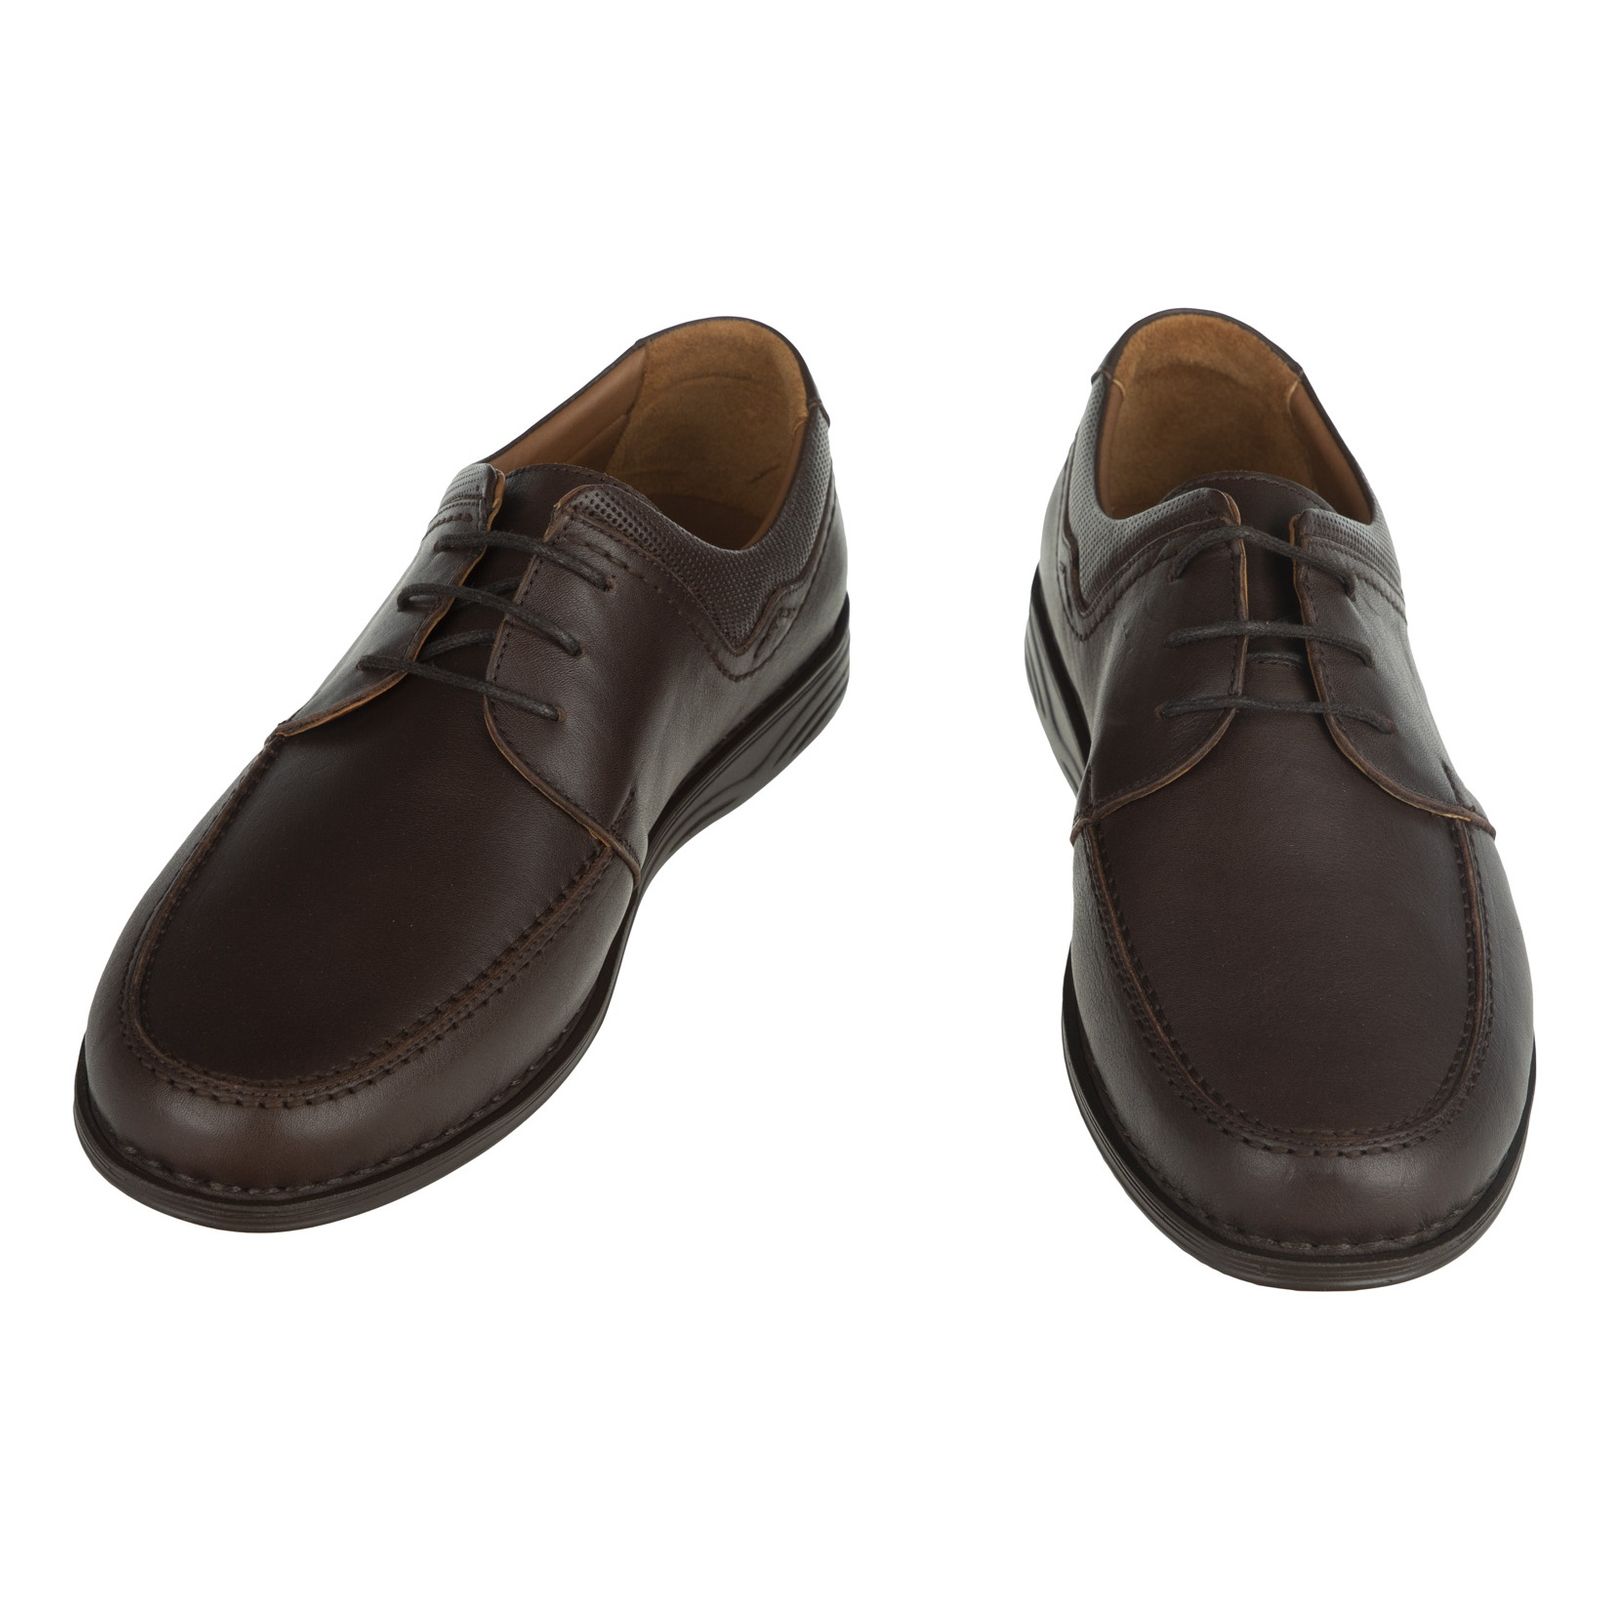 کفش مردانه پولاریس مدل 100296942-103 - قهوه ای - 5